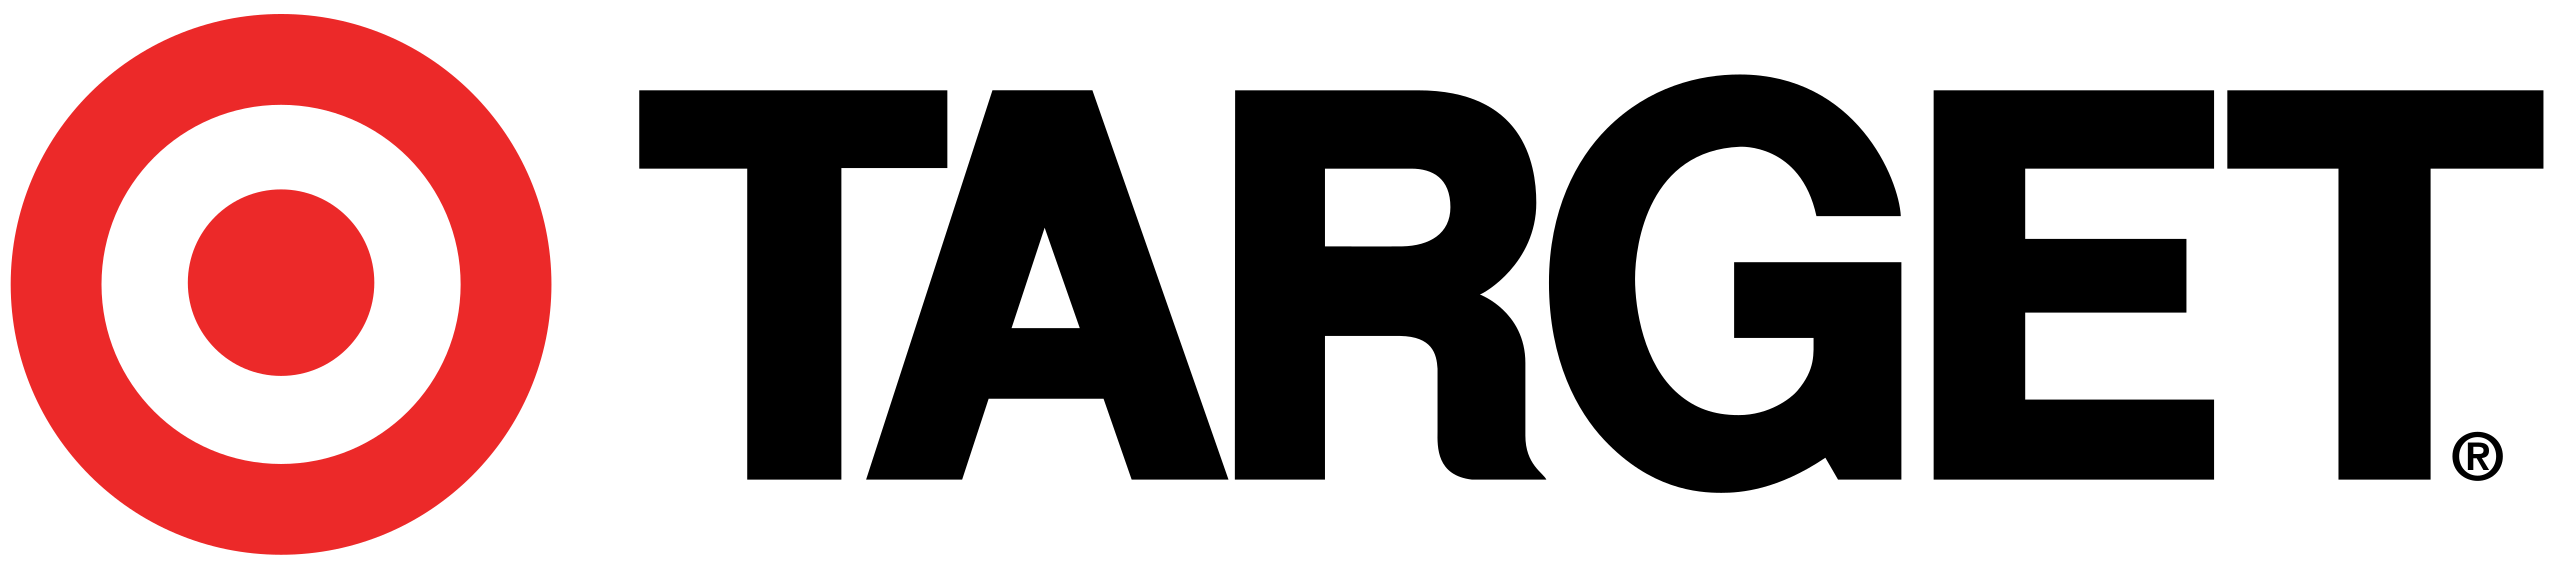 Target’s logo